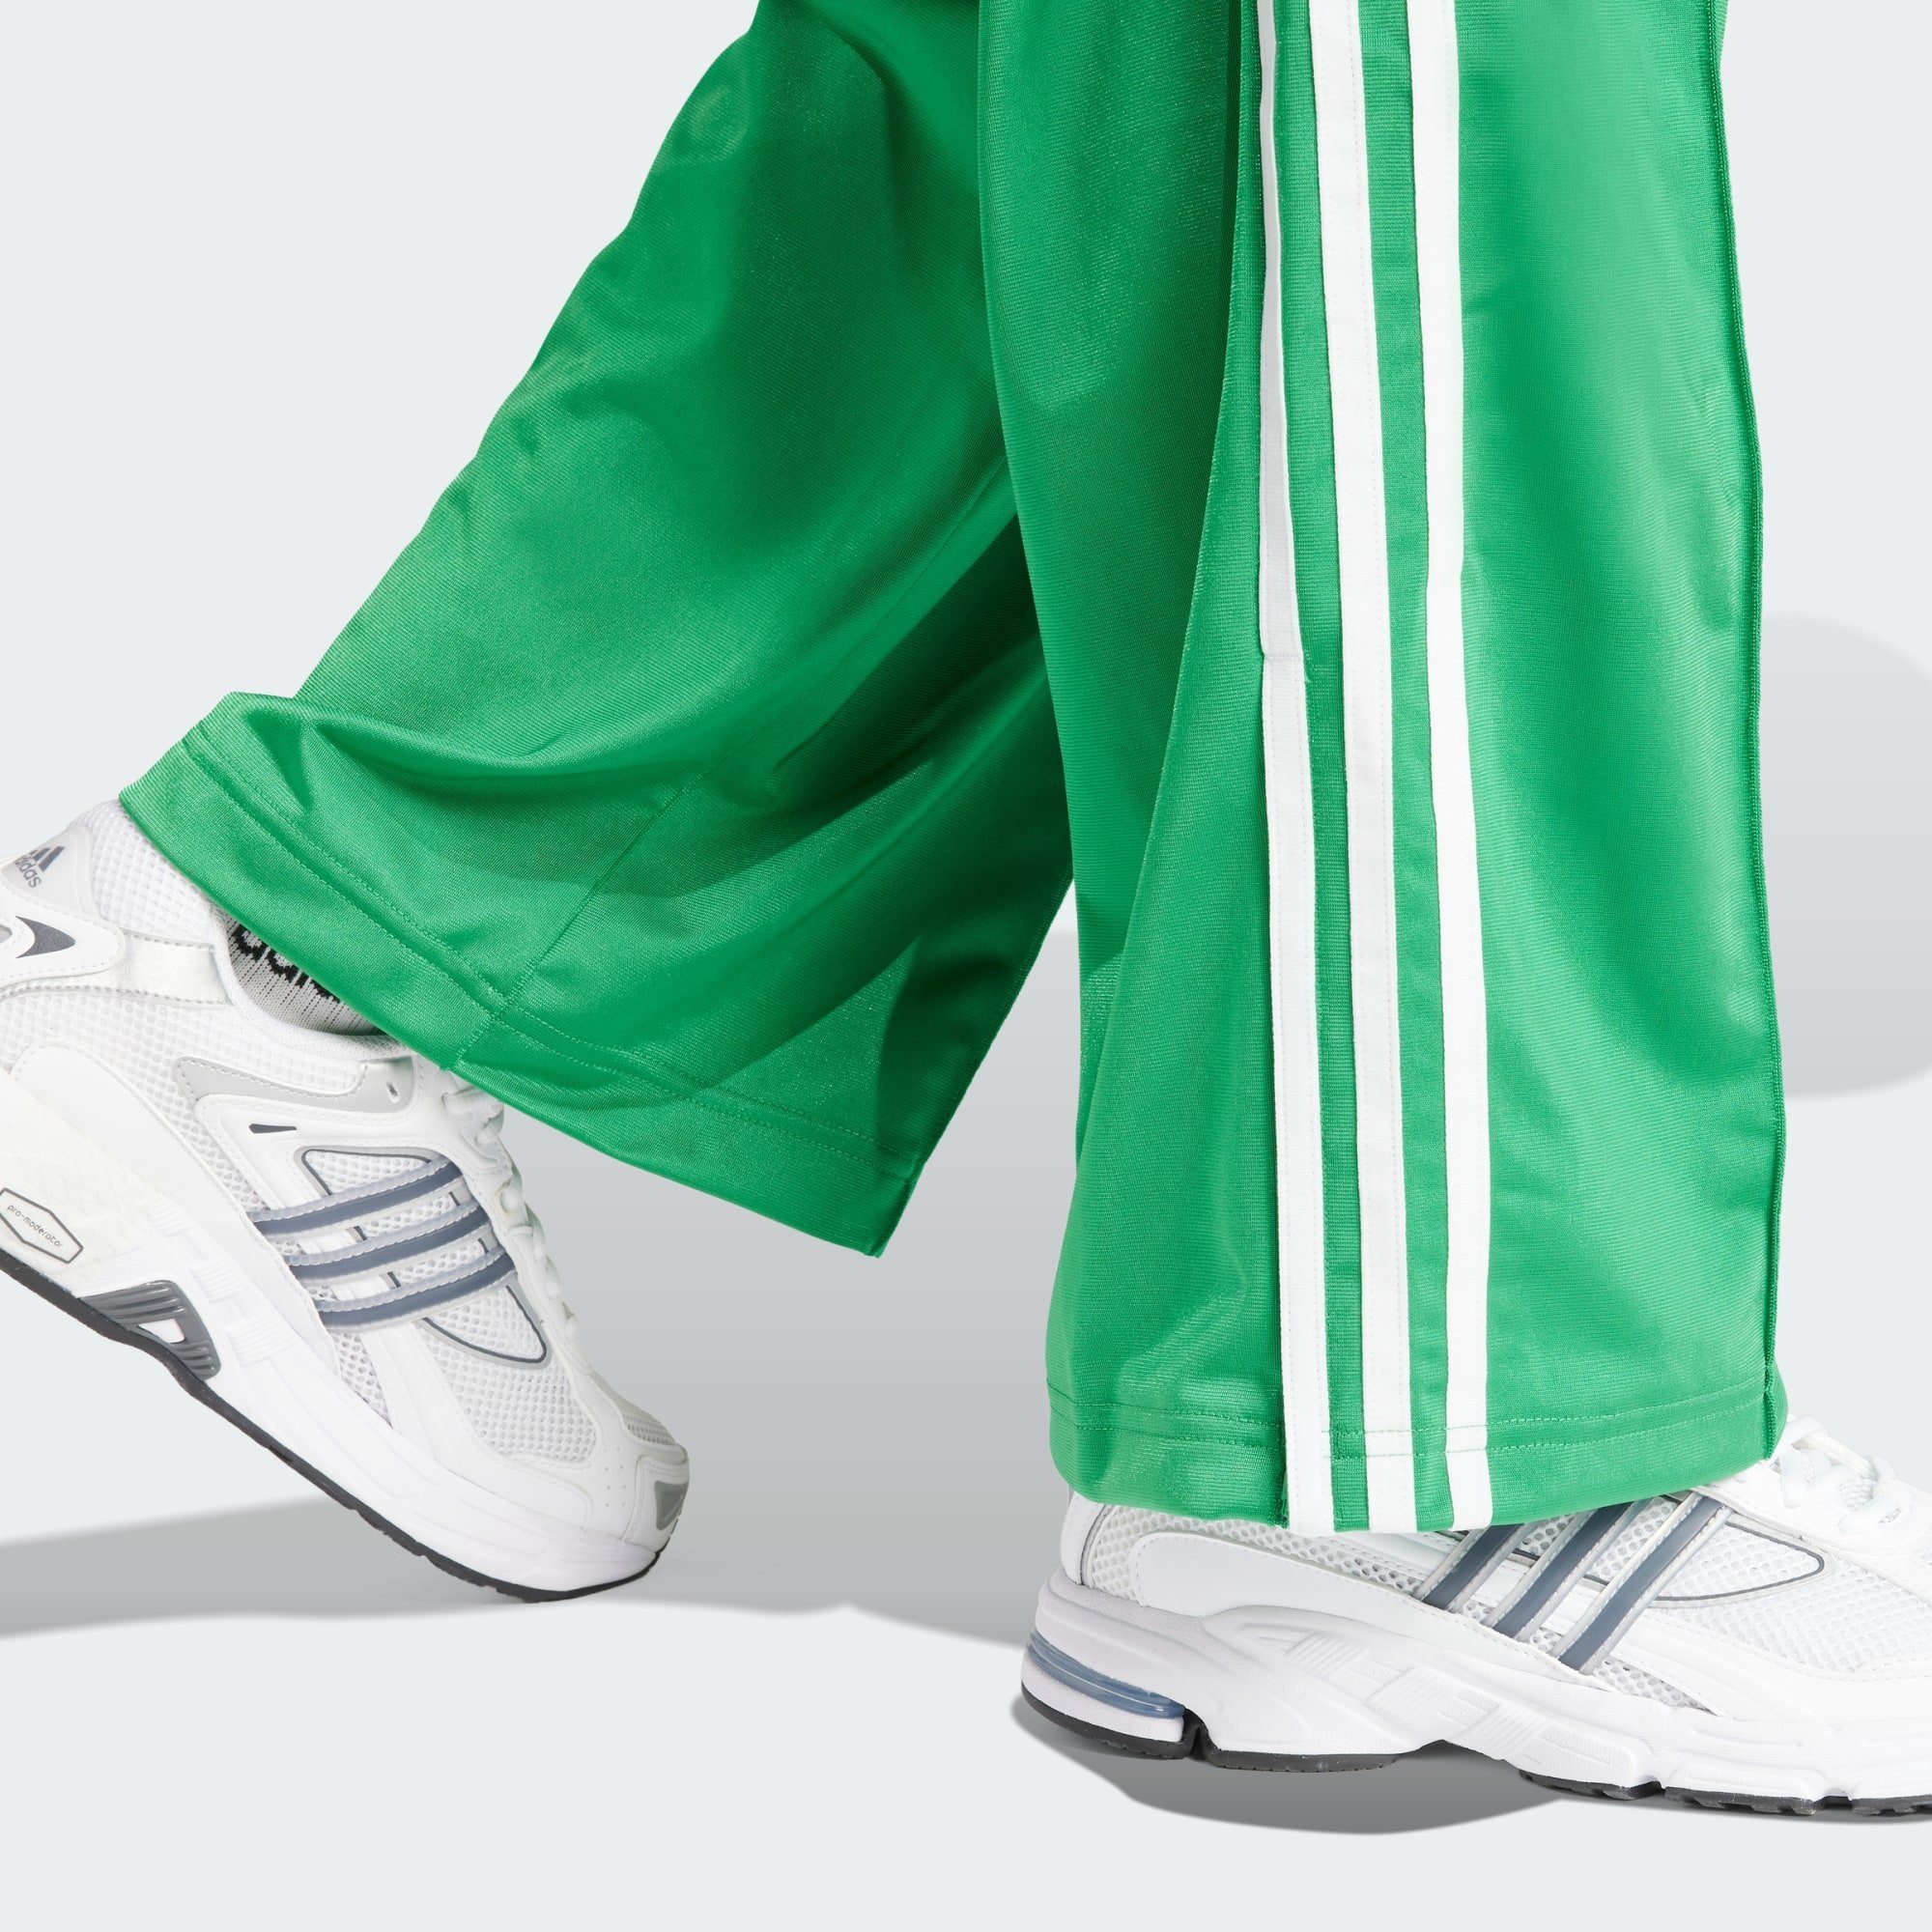 Originals adidas FIREBIRD LOOSE Jogginghose TRAININGSHOSE Green